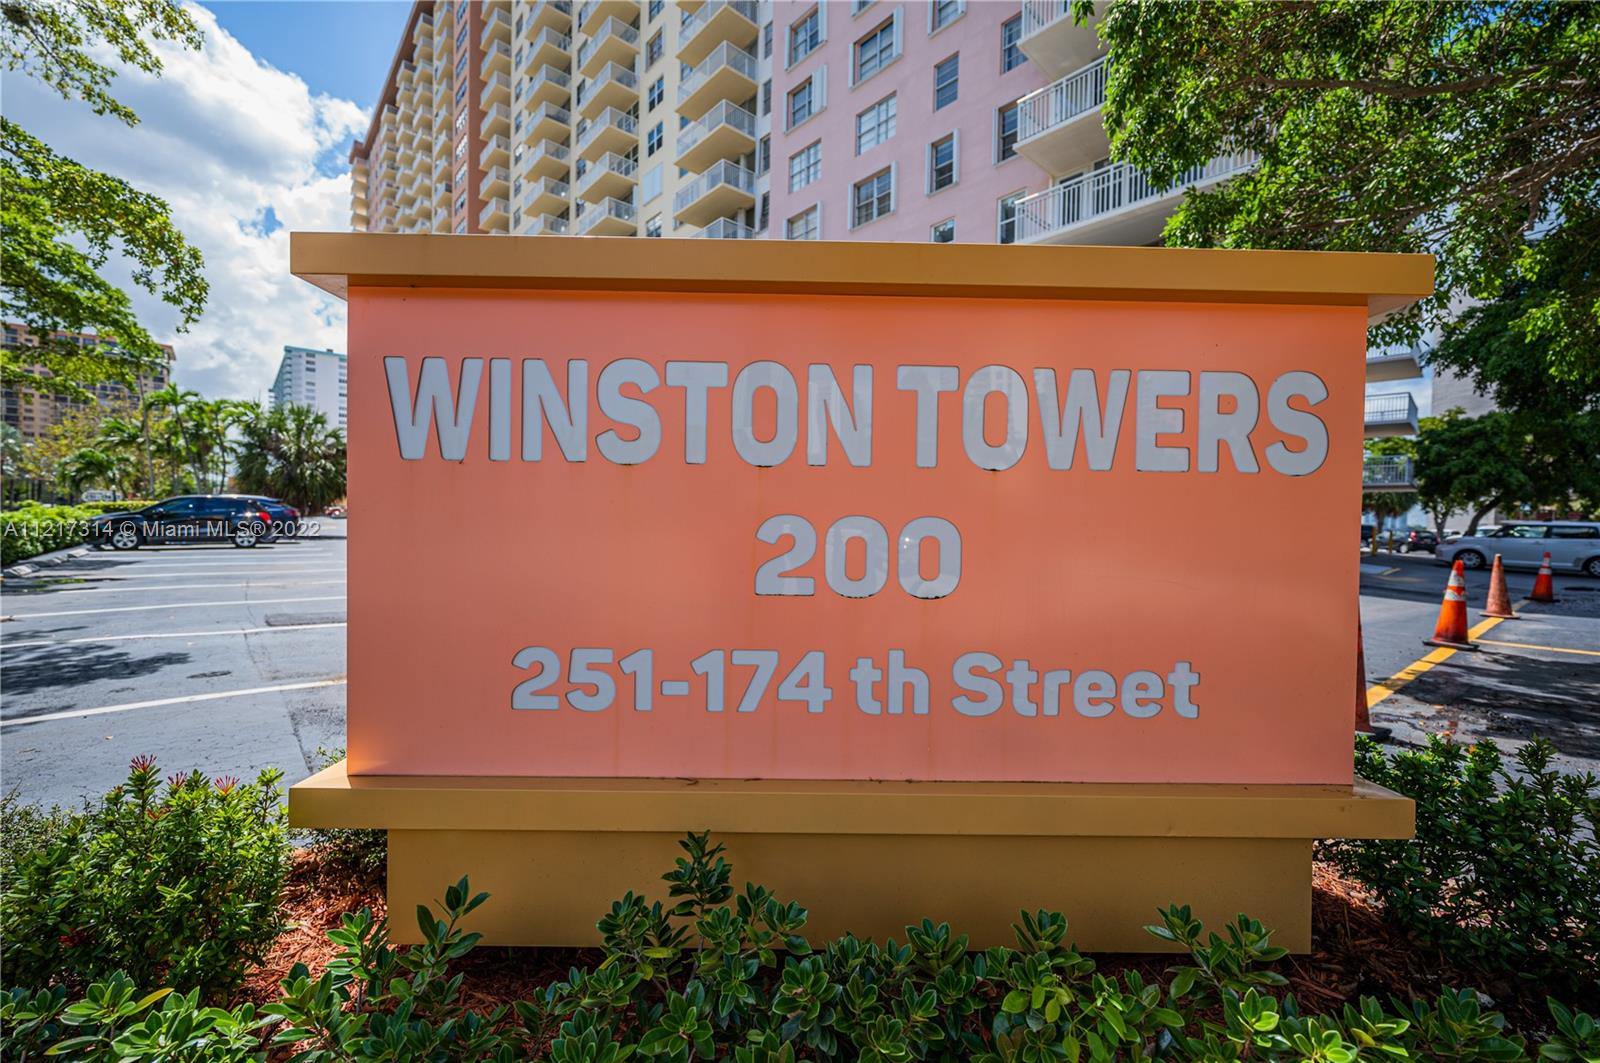 Winston Towers 200 #5